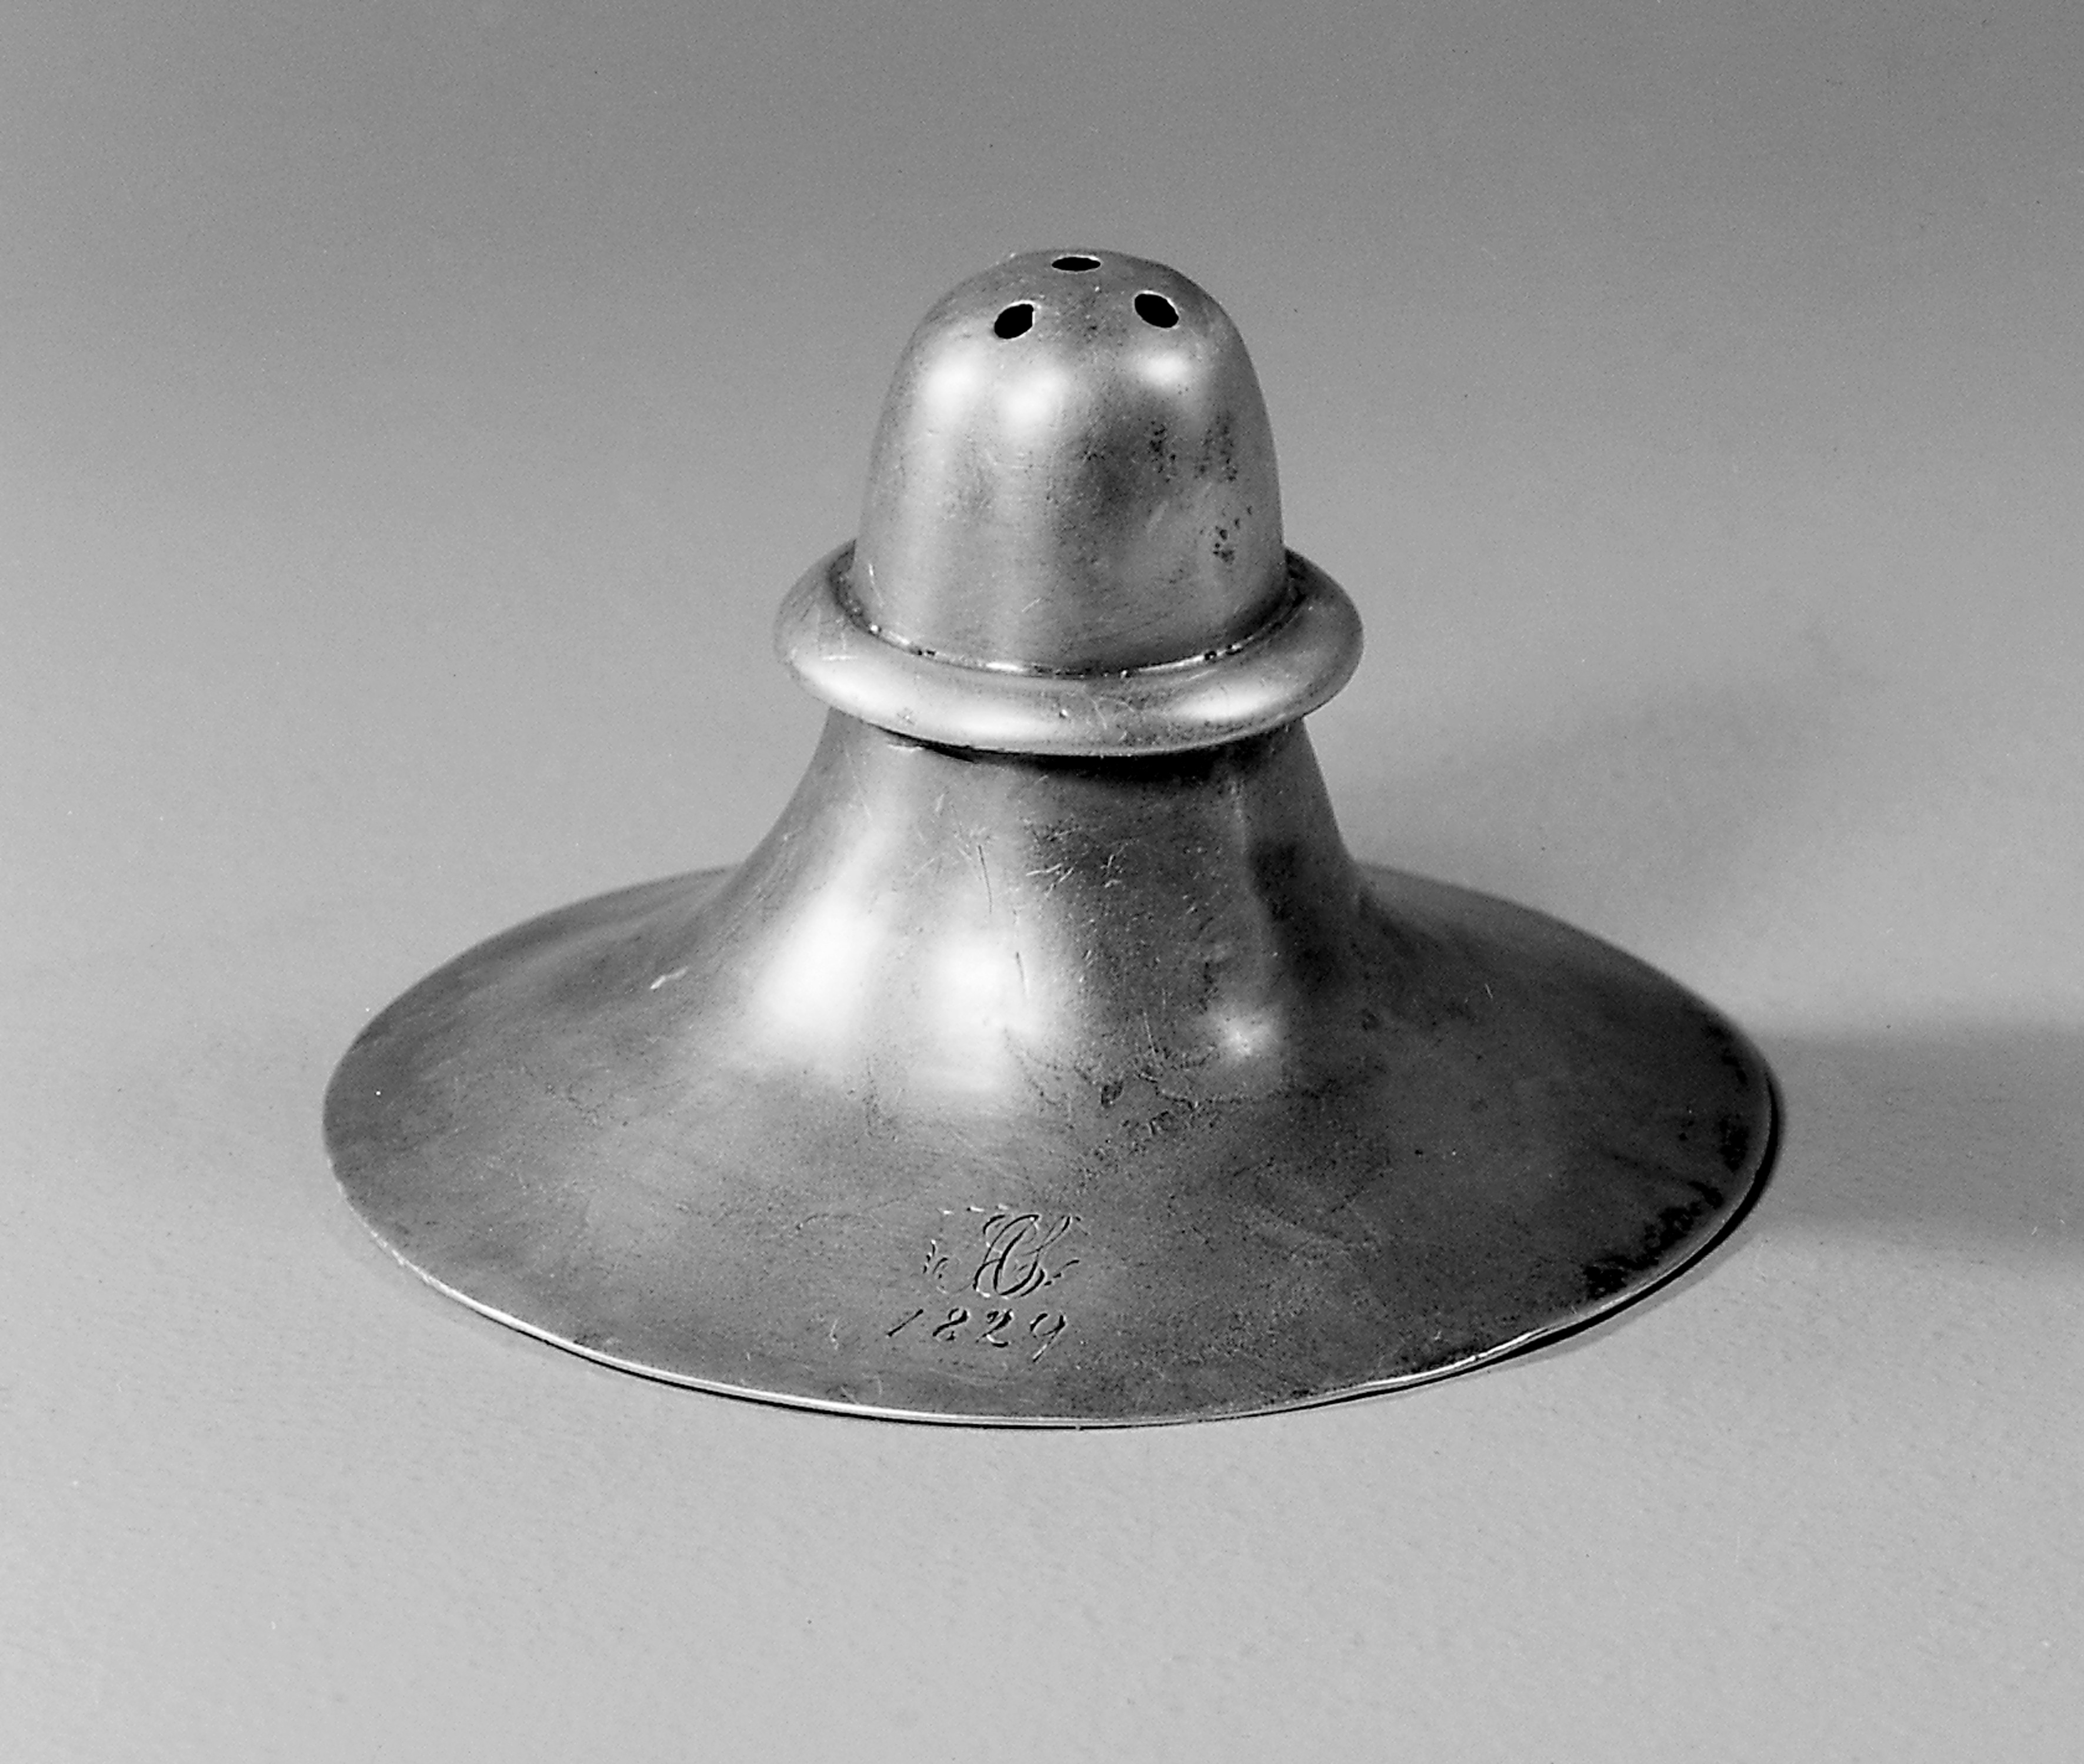 Lead nipple shield, United States, 1920-1930